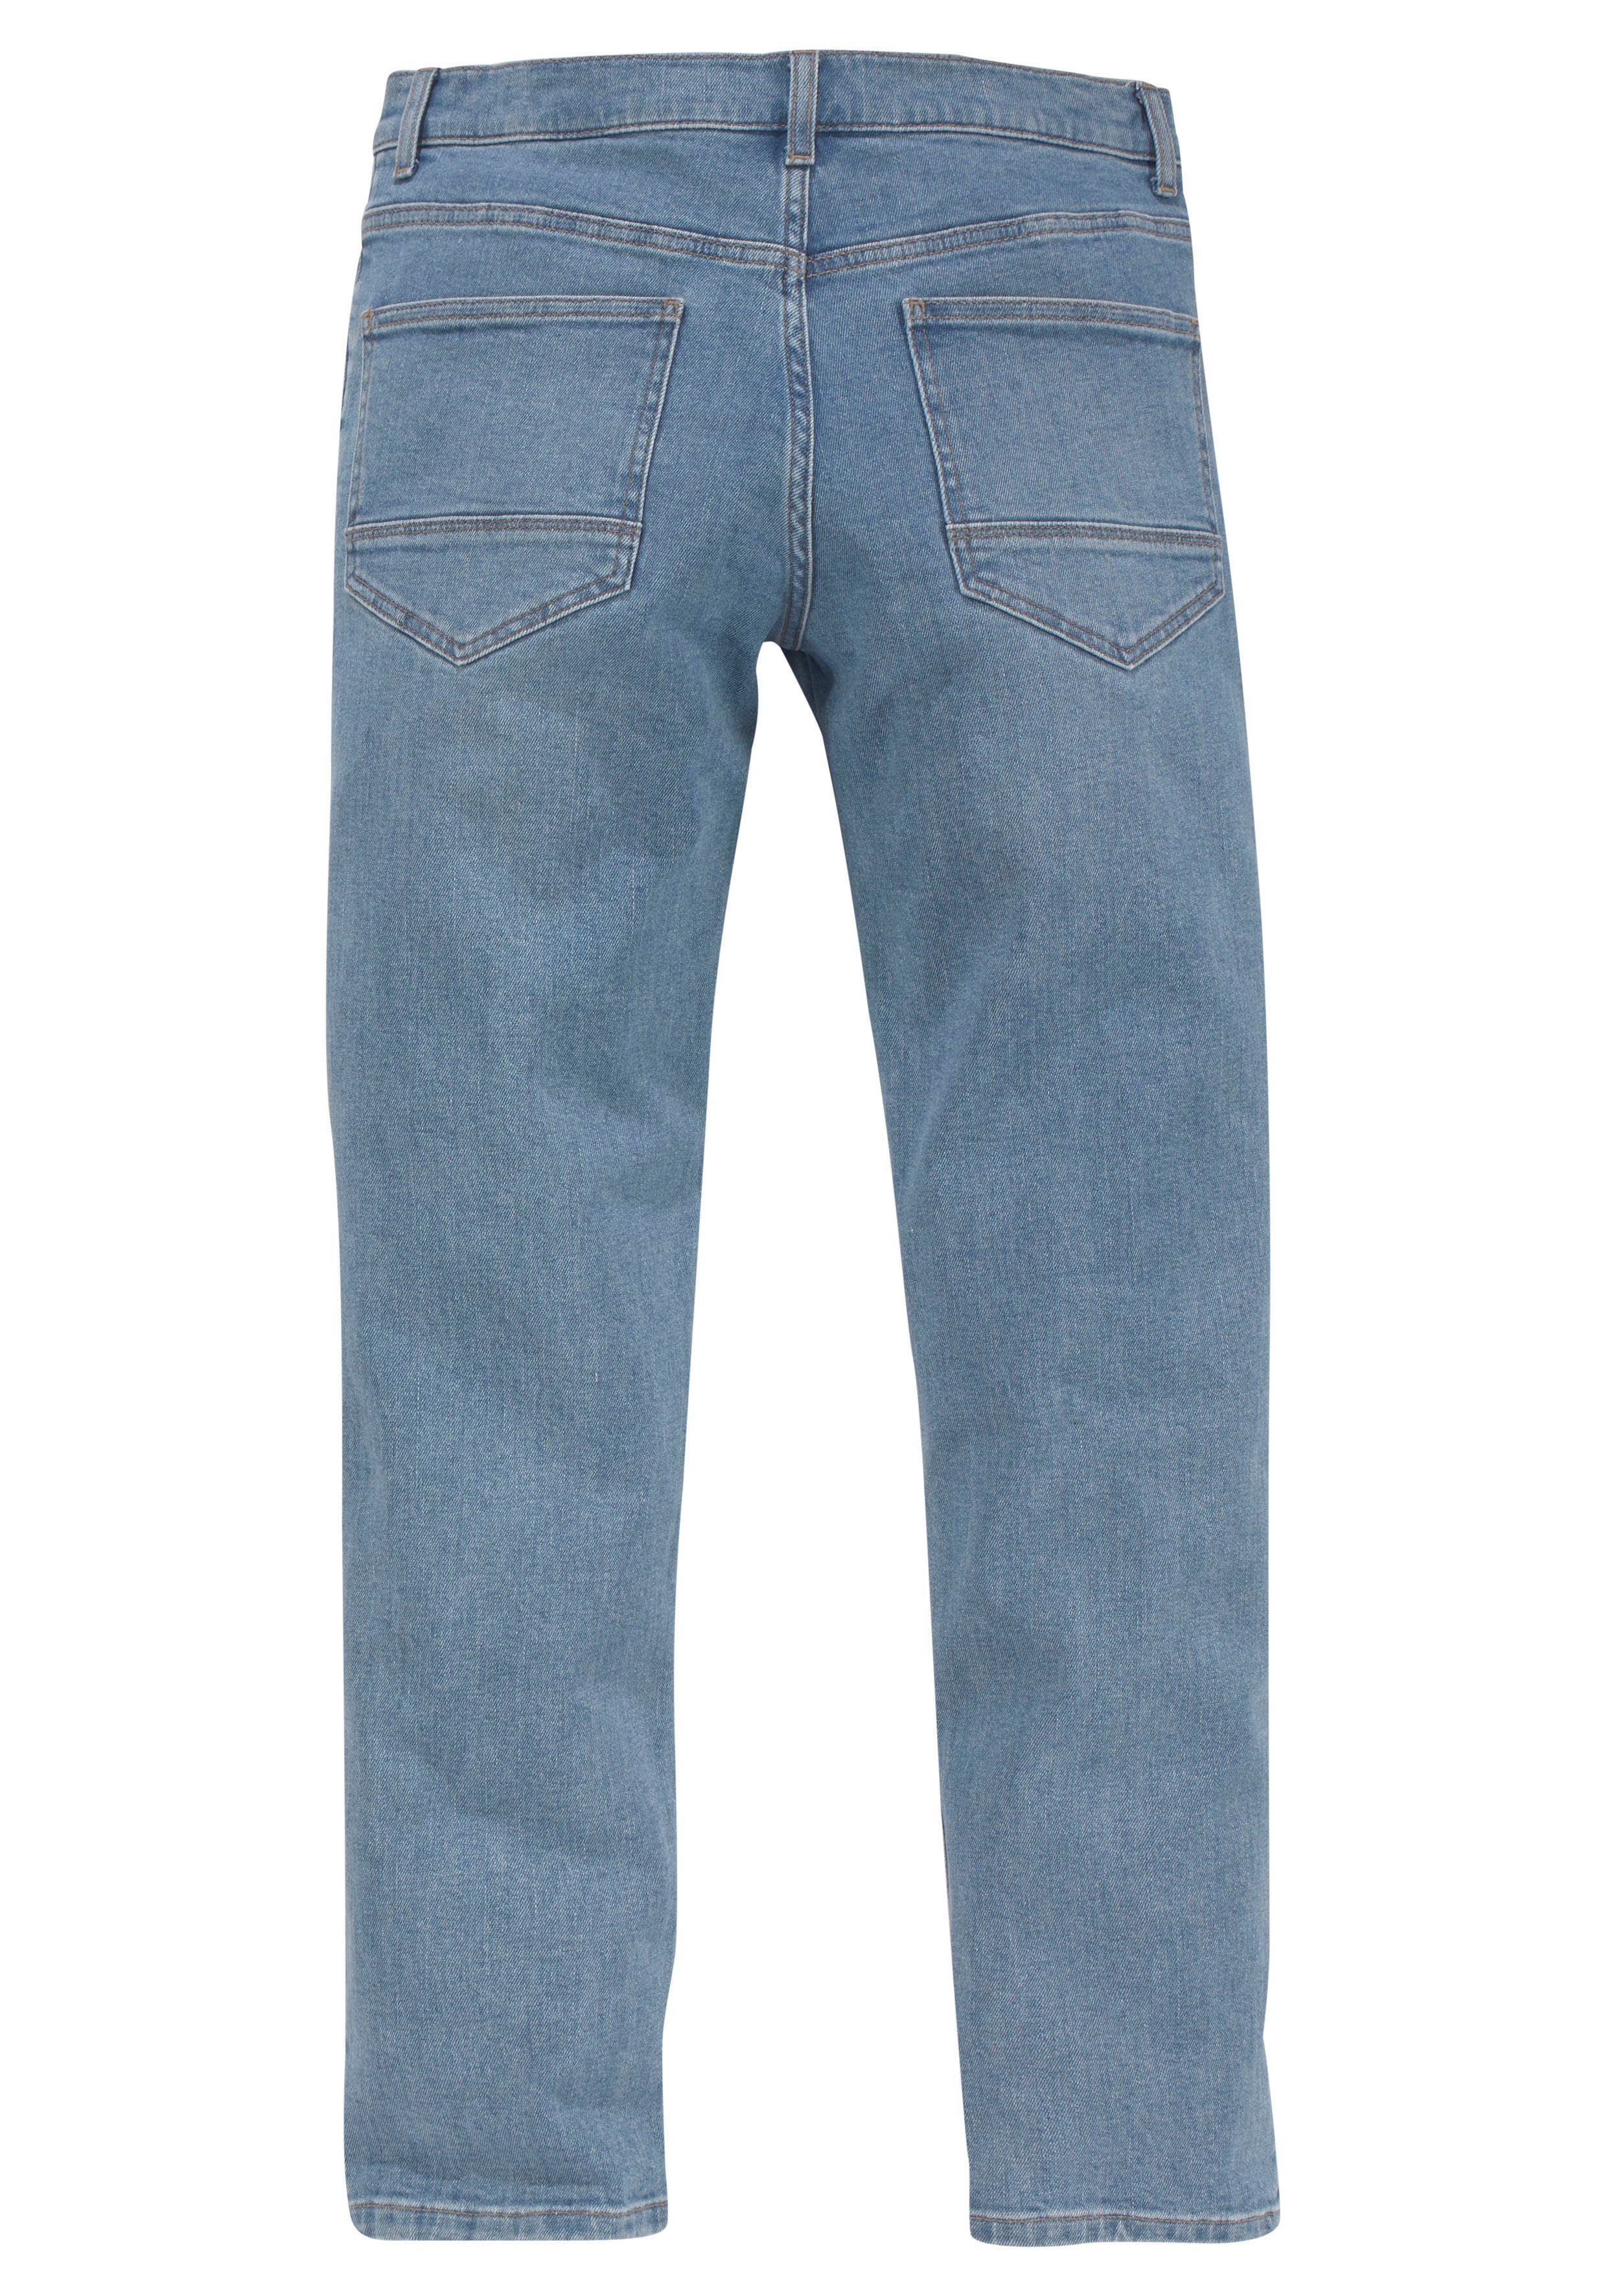 OTTO blue star Bio-Baumwolle products 5-Pocket-Jeans aus